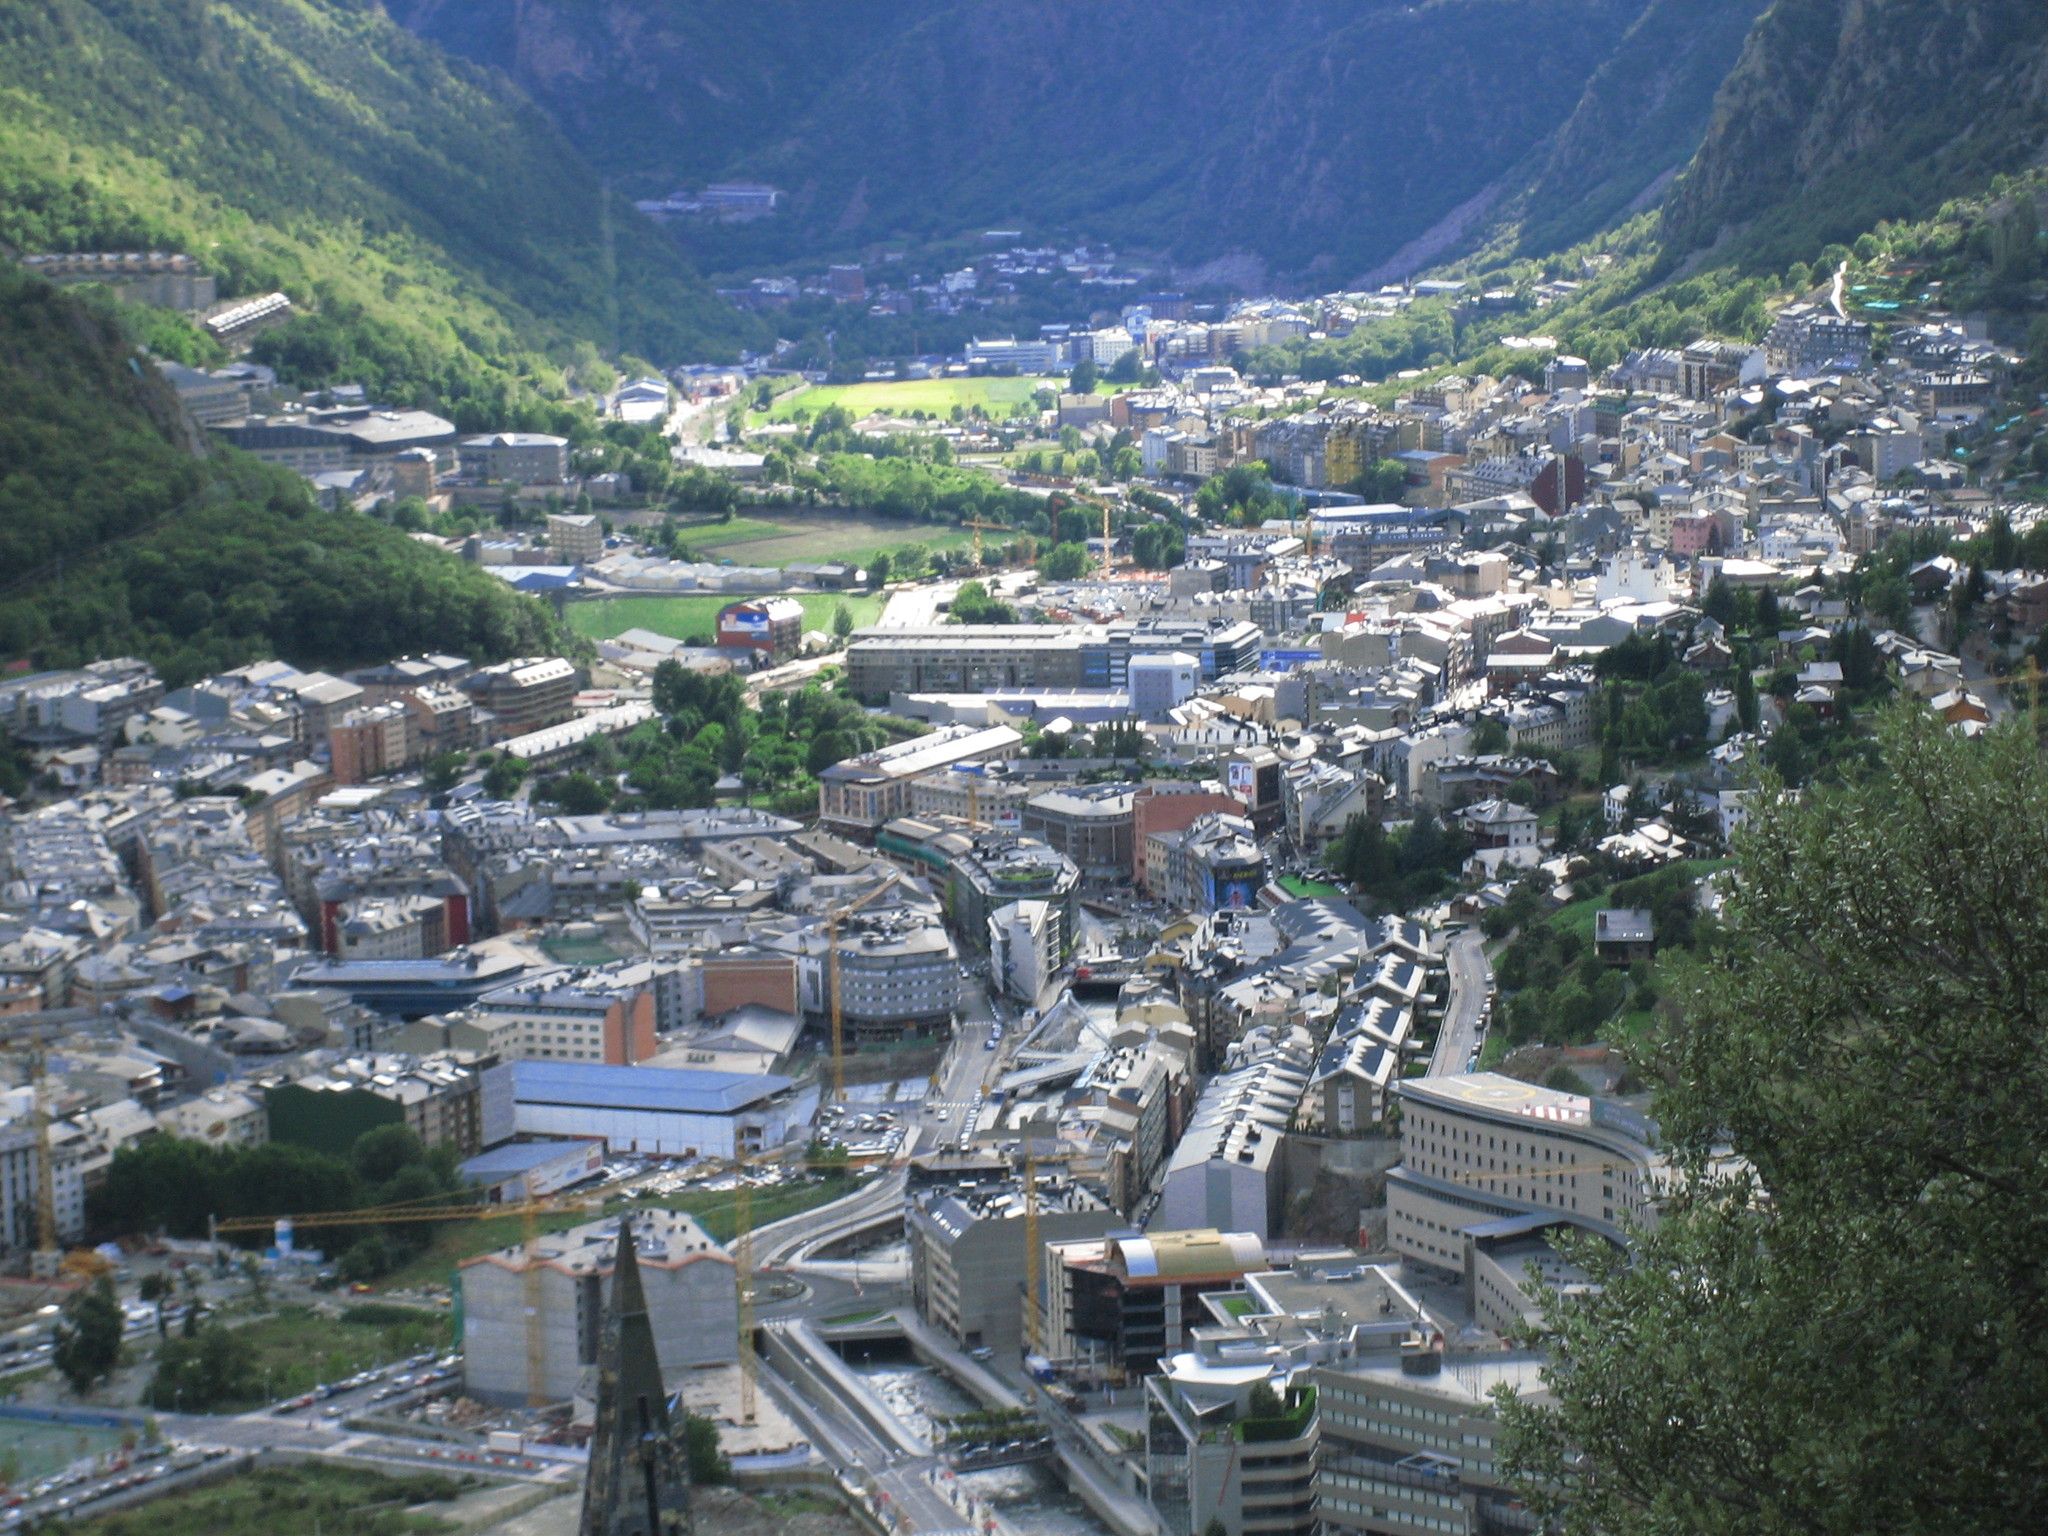 Andorra la Vella, capital de Andorra